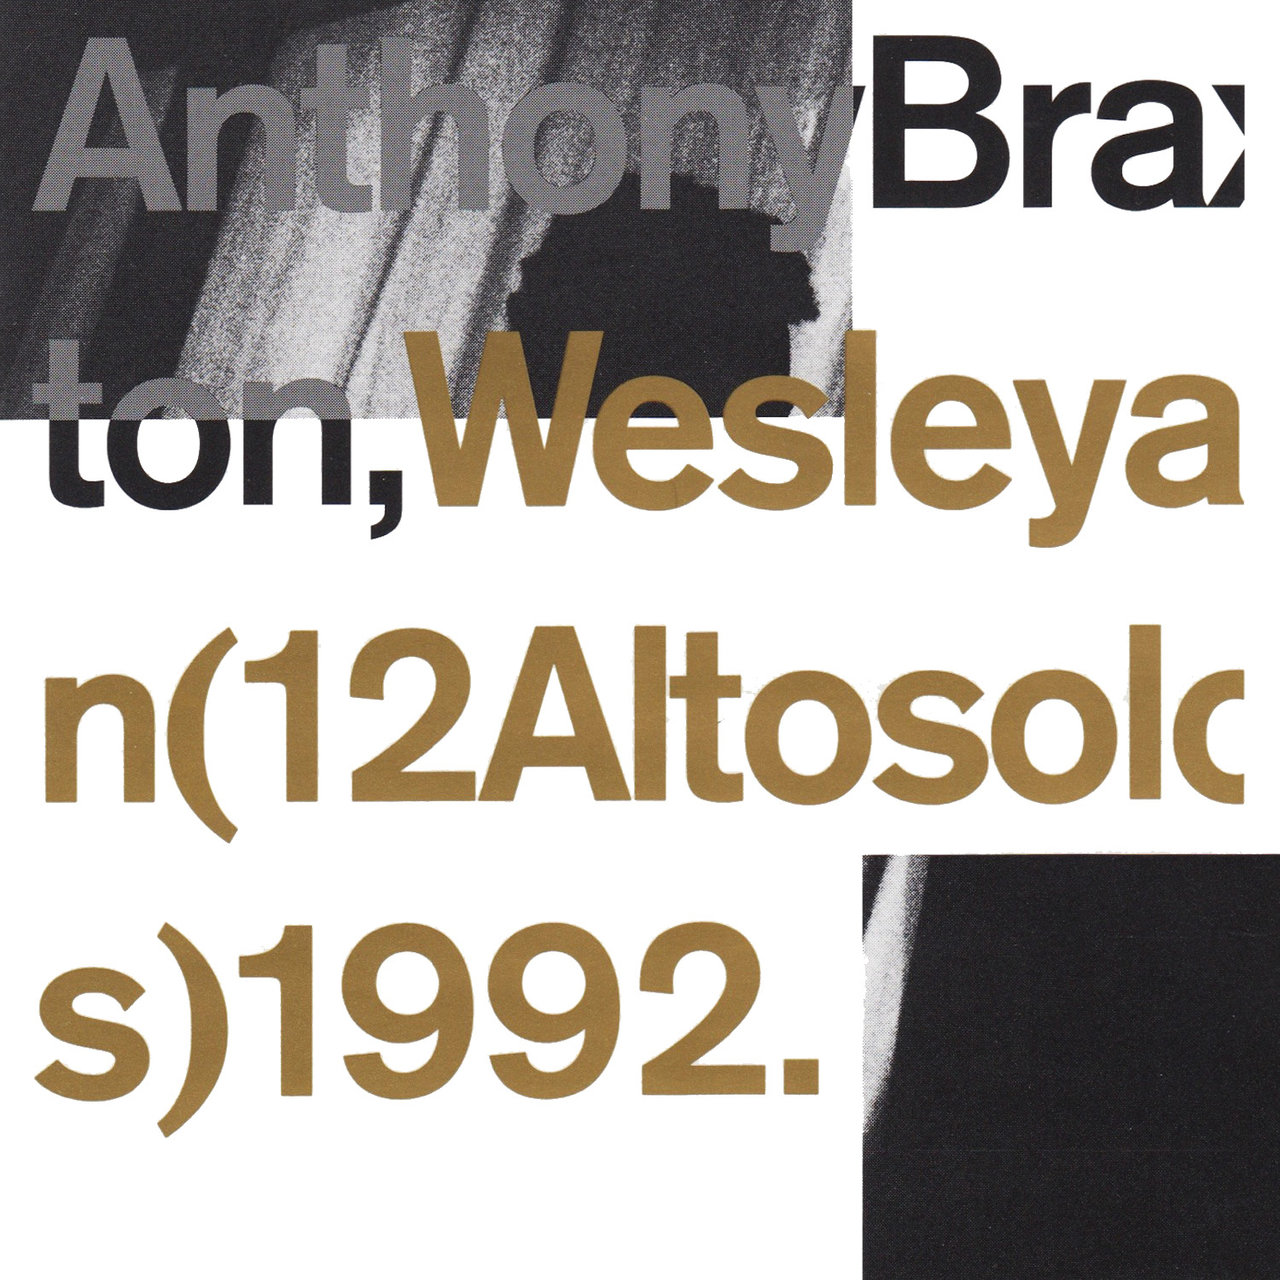 Wesleyan (12 Altosolos) 1992 [1992]